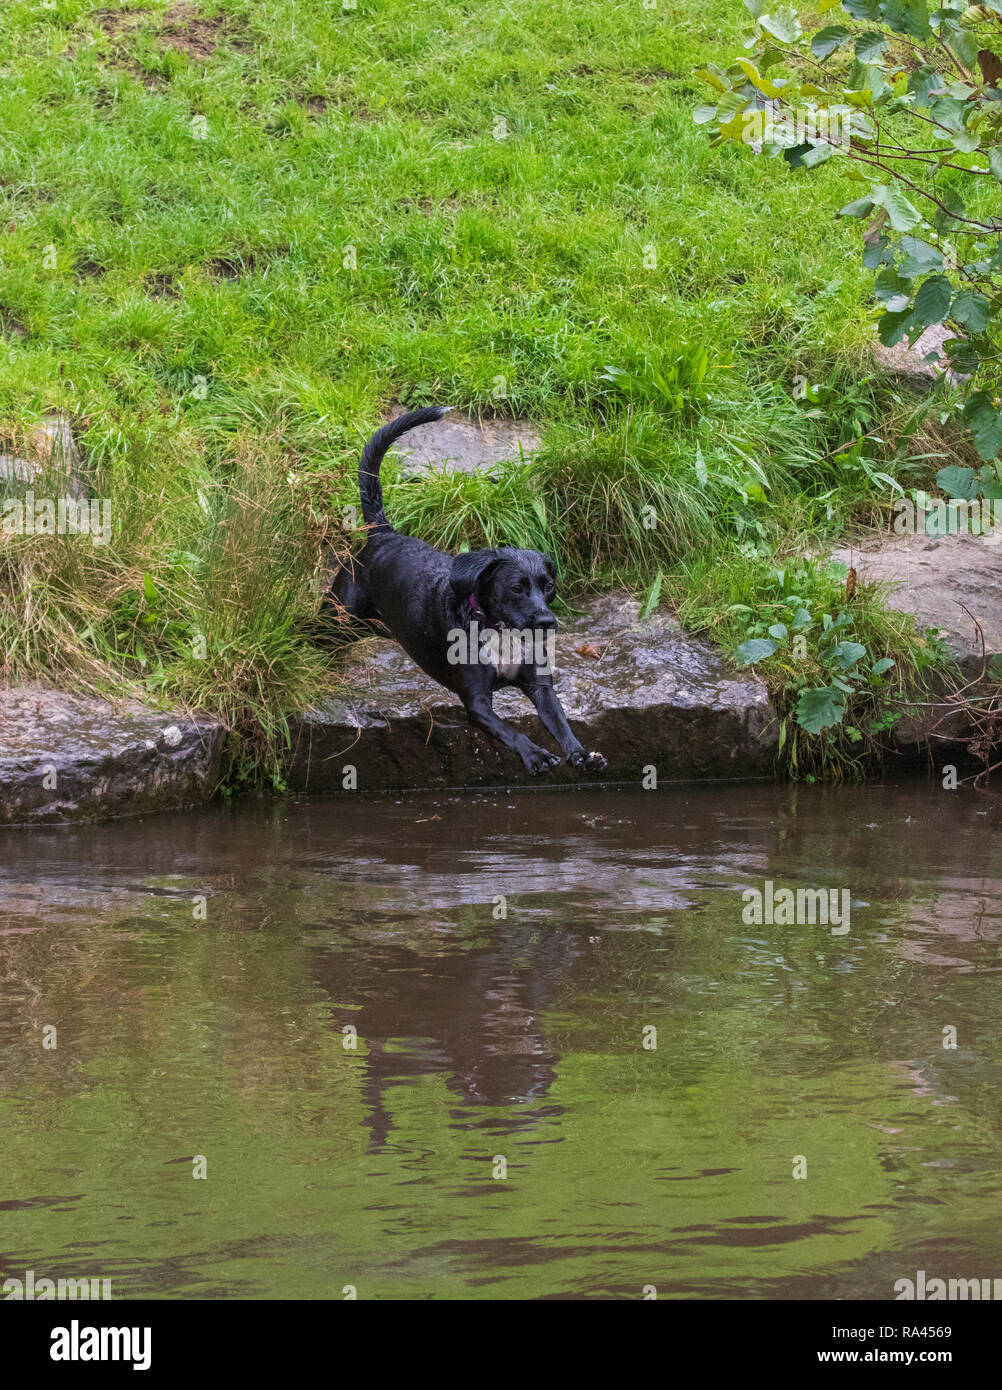 Hund im Wasser springen Stockfoto